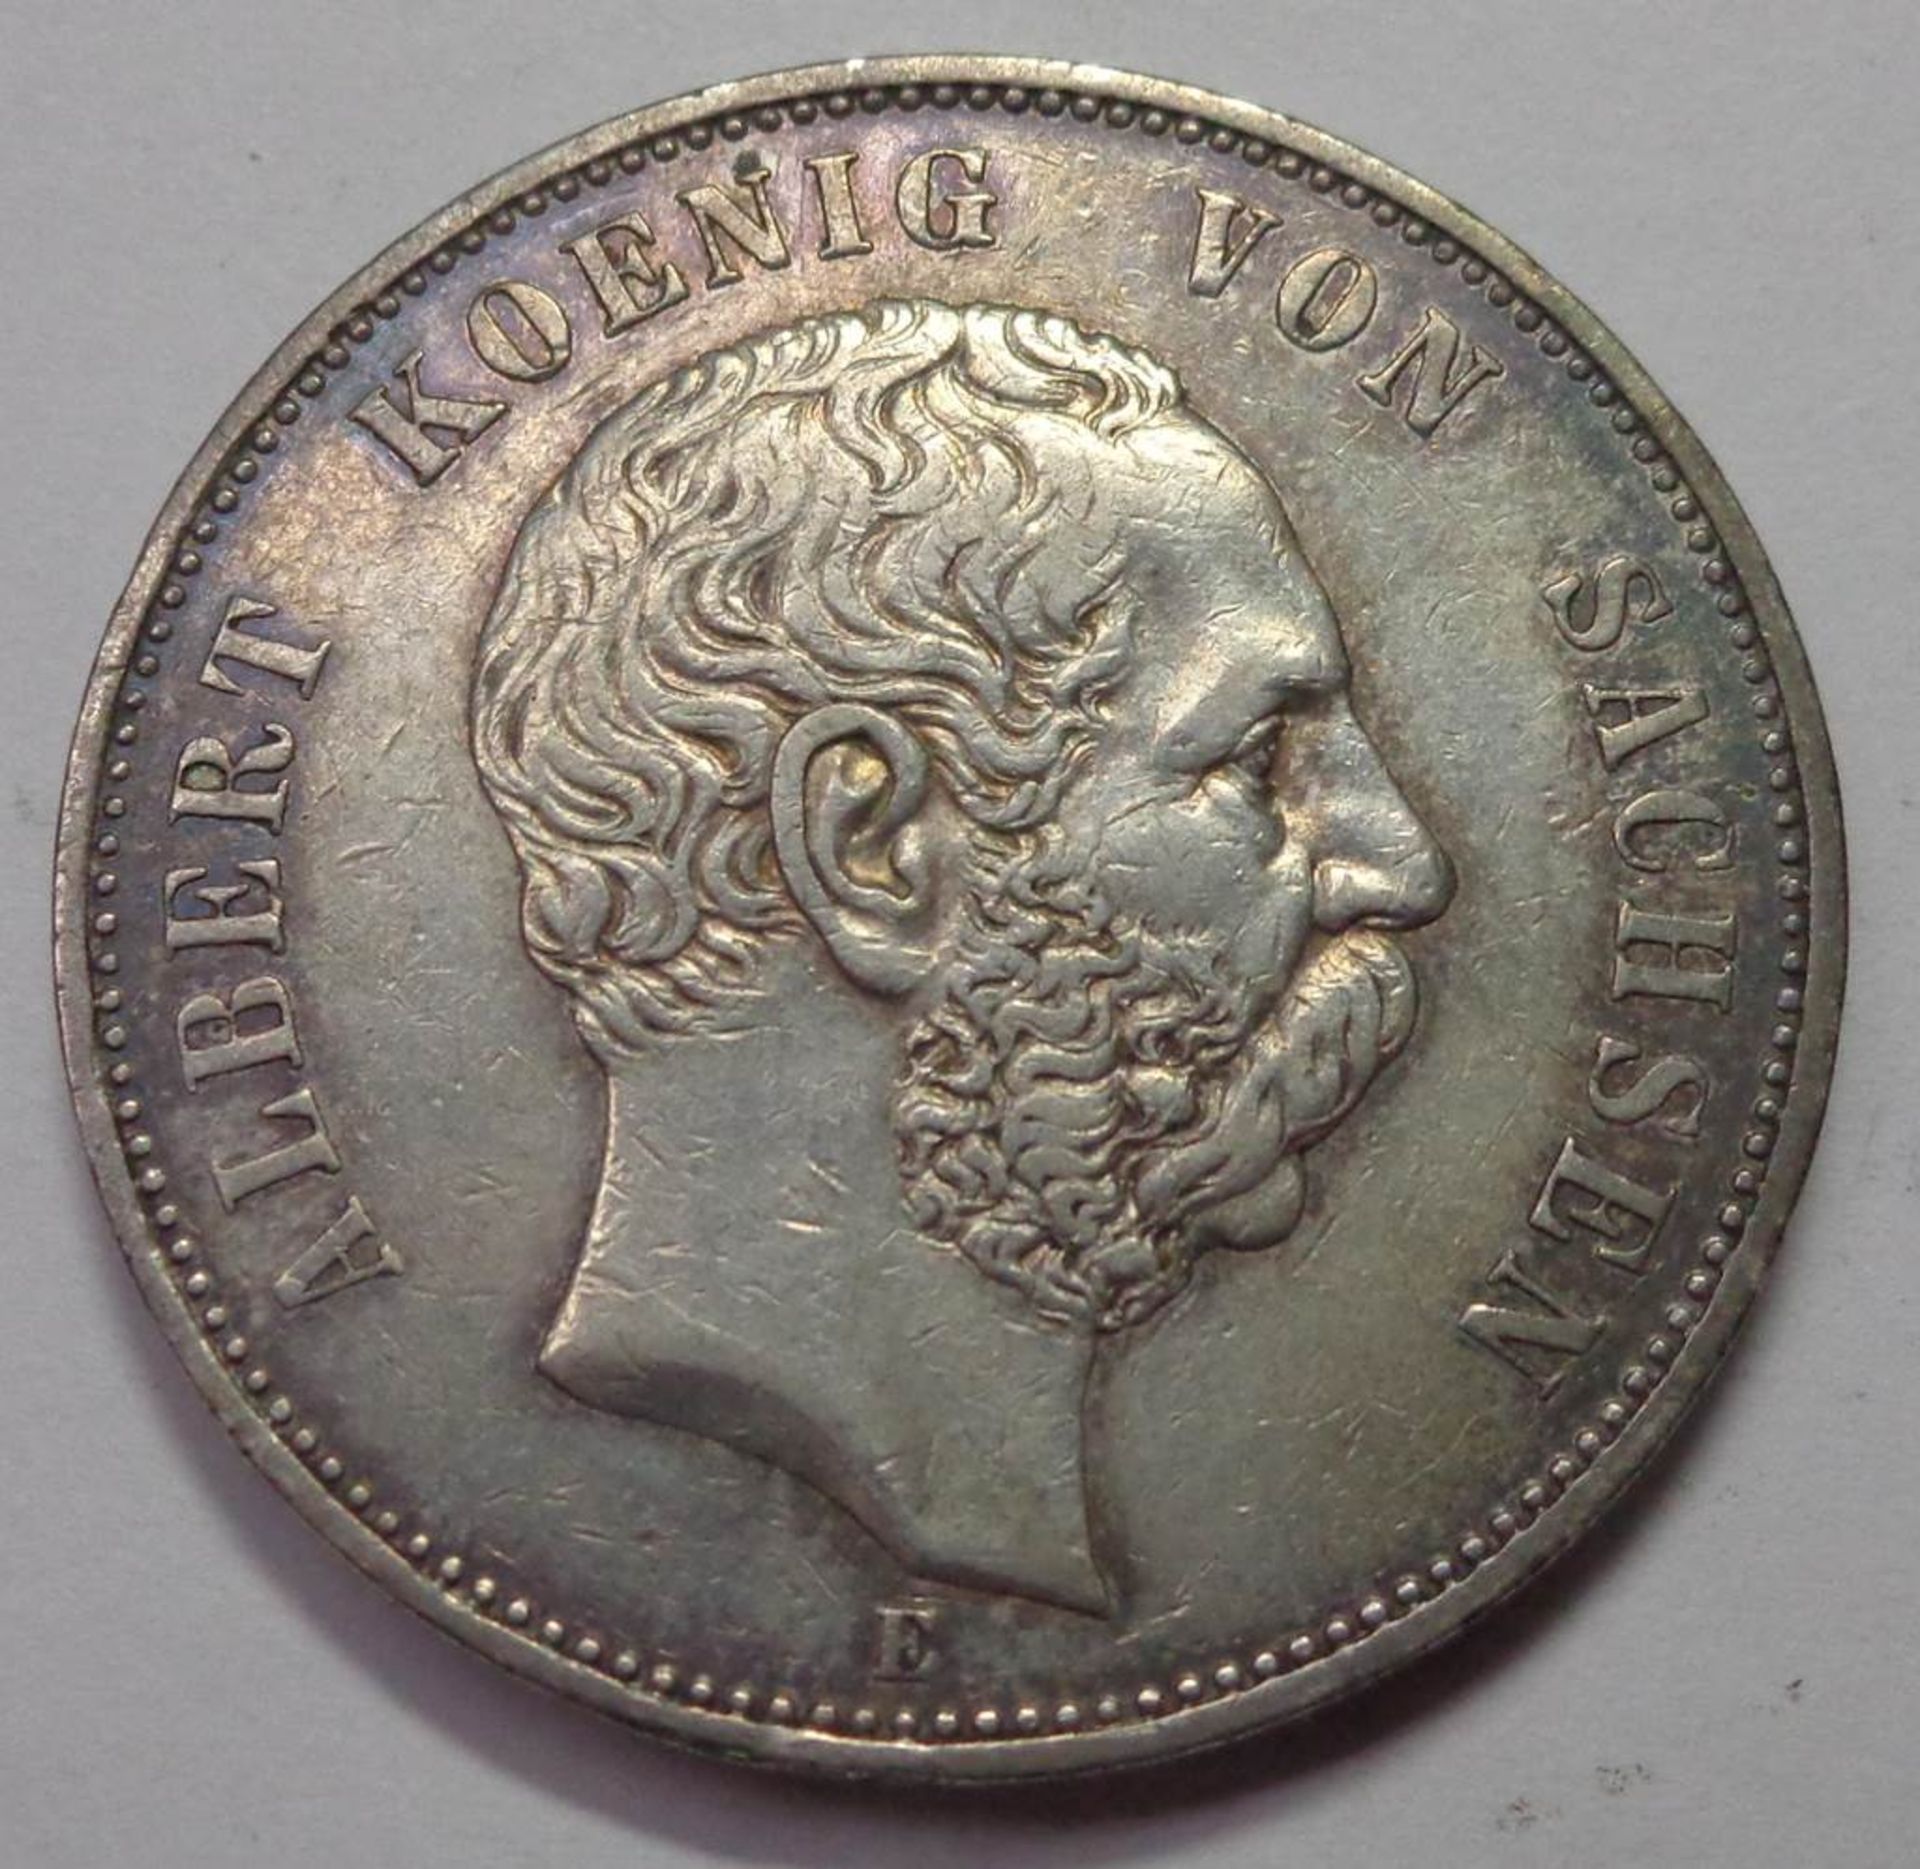 Fünf Mark, Deutsches Reich 1900 E, Albert König v. Sachsen, ss, 27,71 g